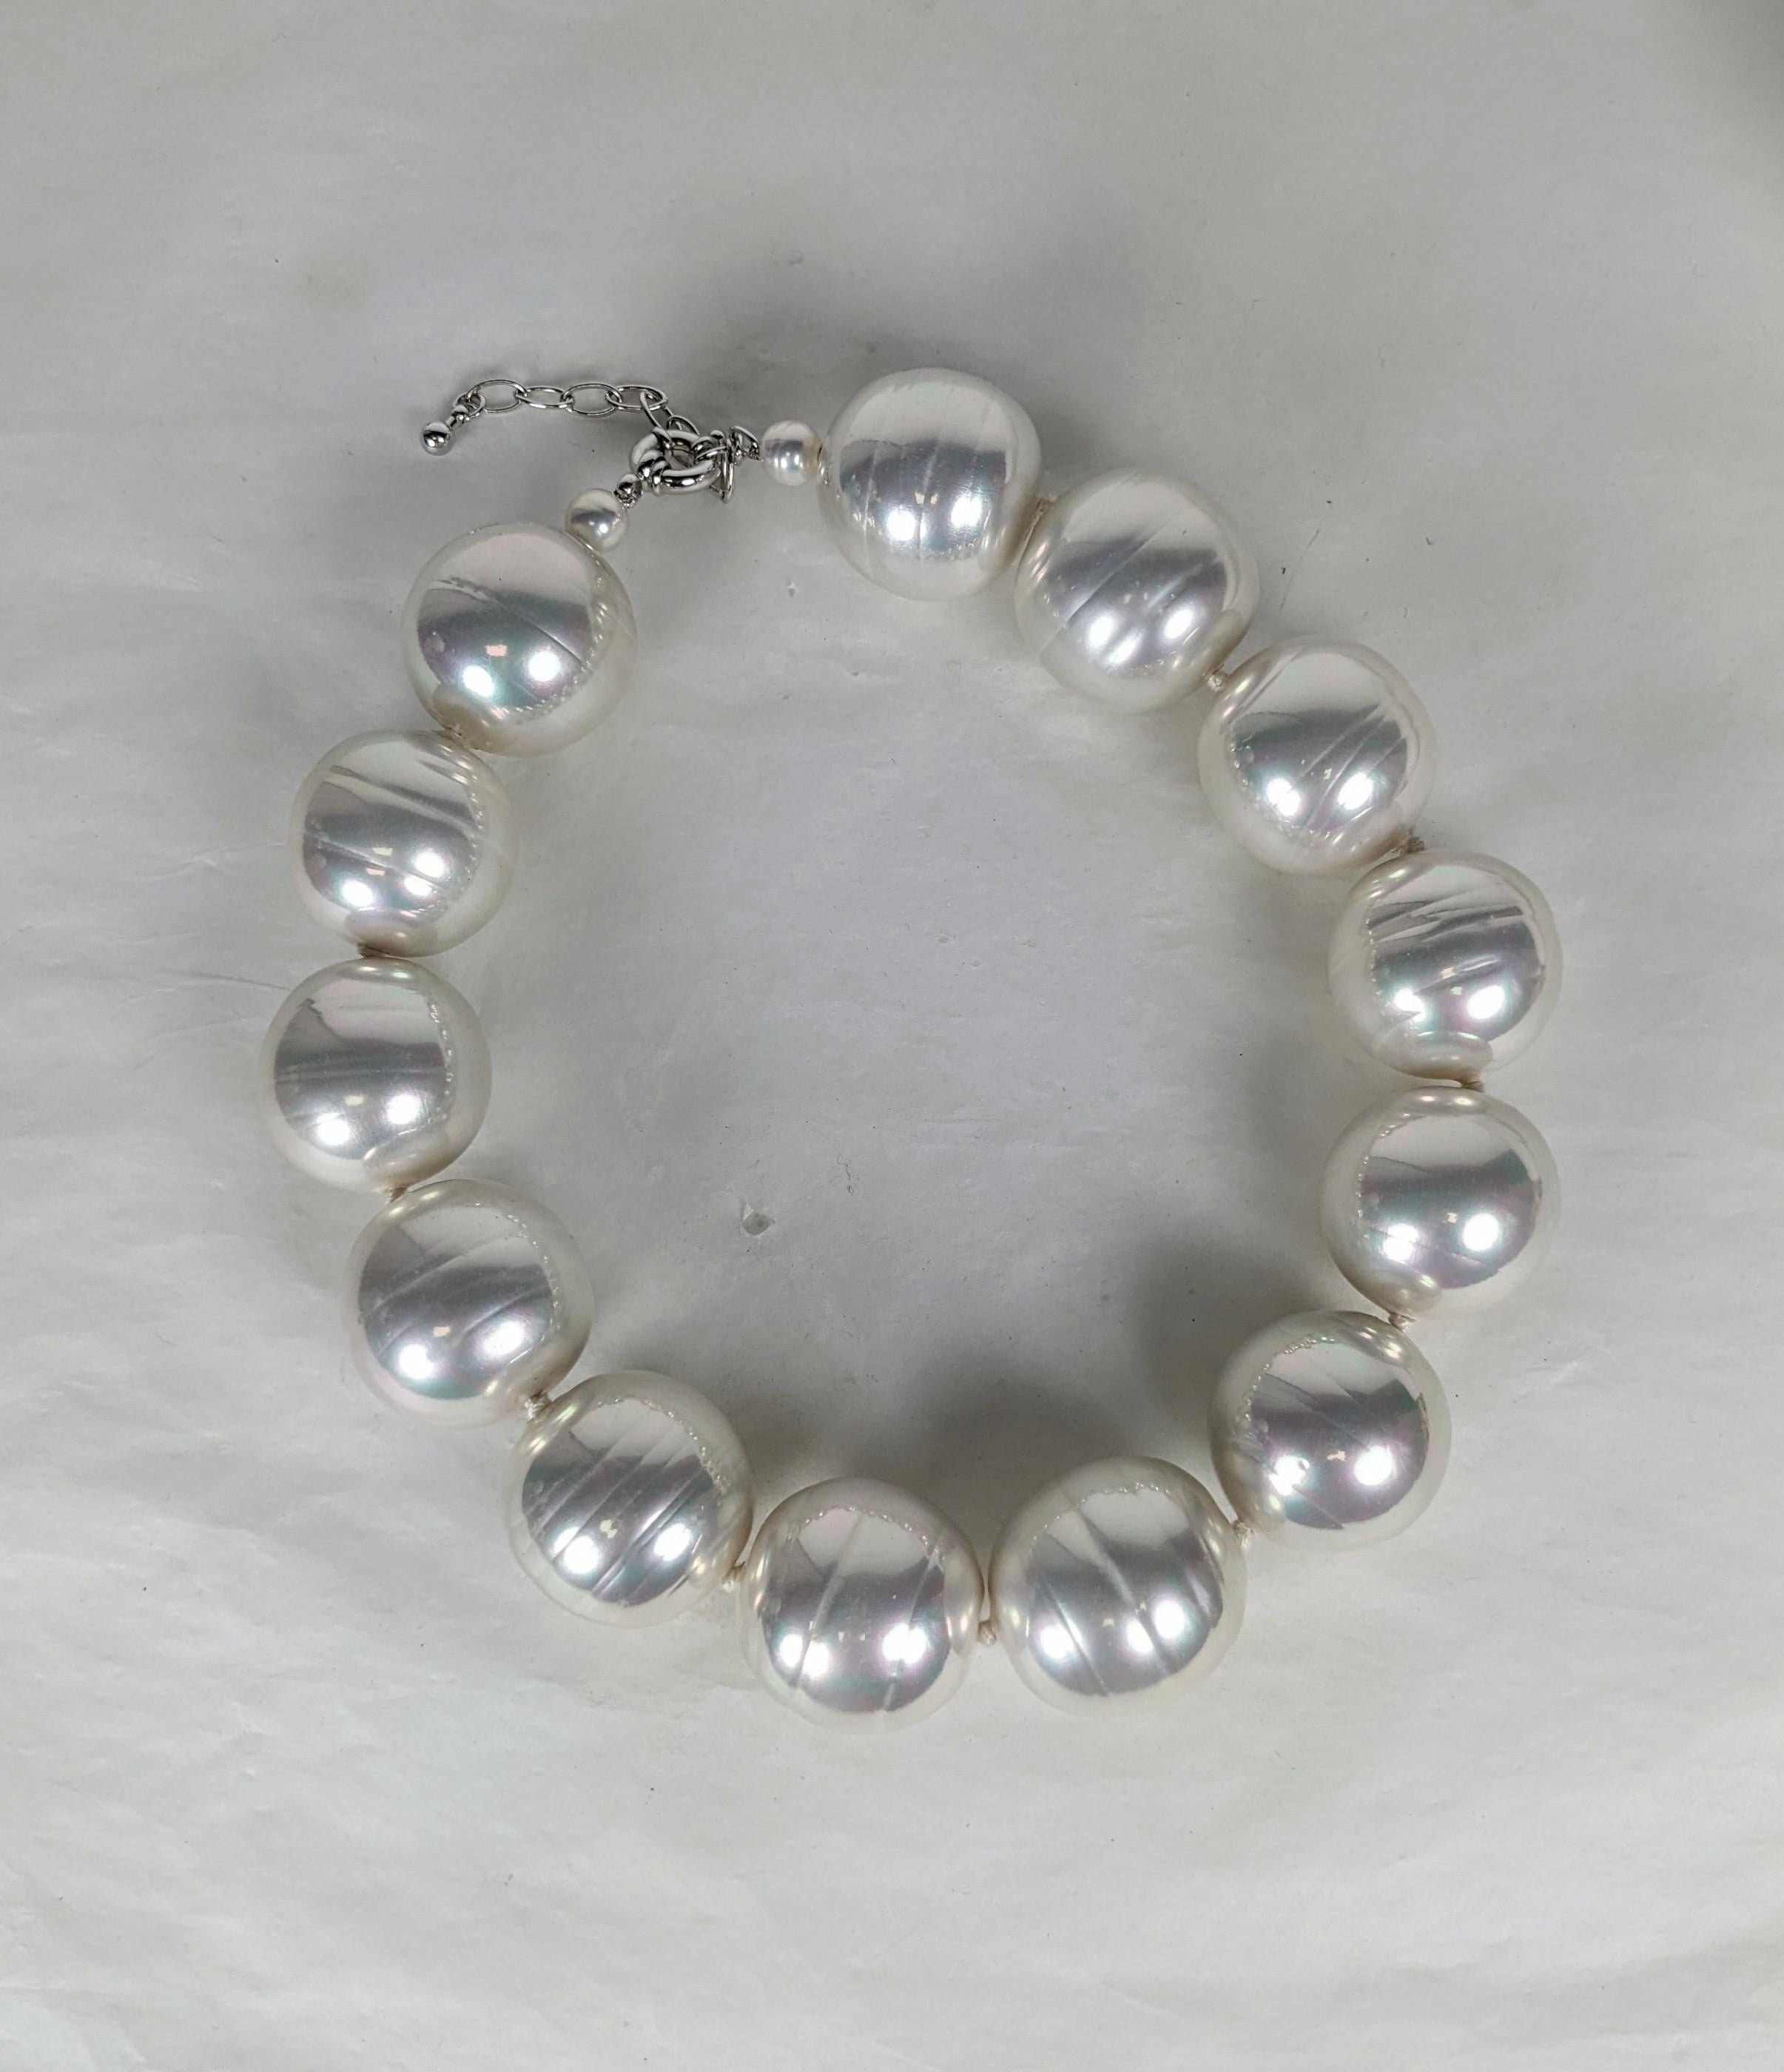 Fausses perles baroques surdimensionnées de haute qualité datant des années 1980, à l'époque où les perles étaient plus grosses que les autres. 30 mm de diamètre, comme de petites balles de golf, nouées à la main. Veuillez noter qu'elles sont assez